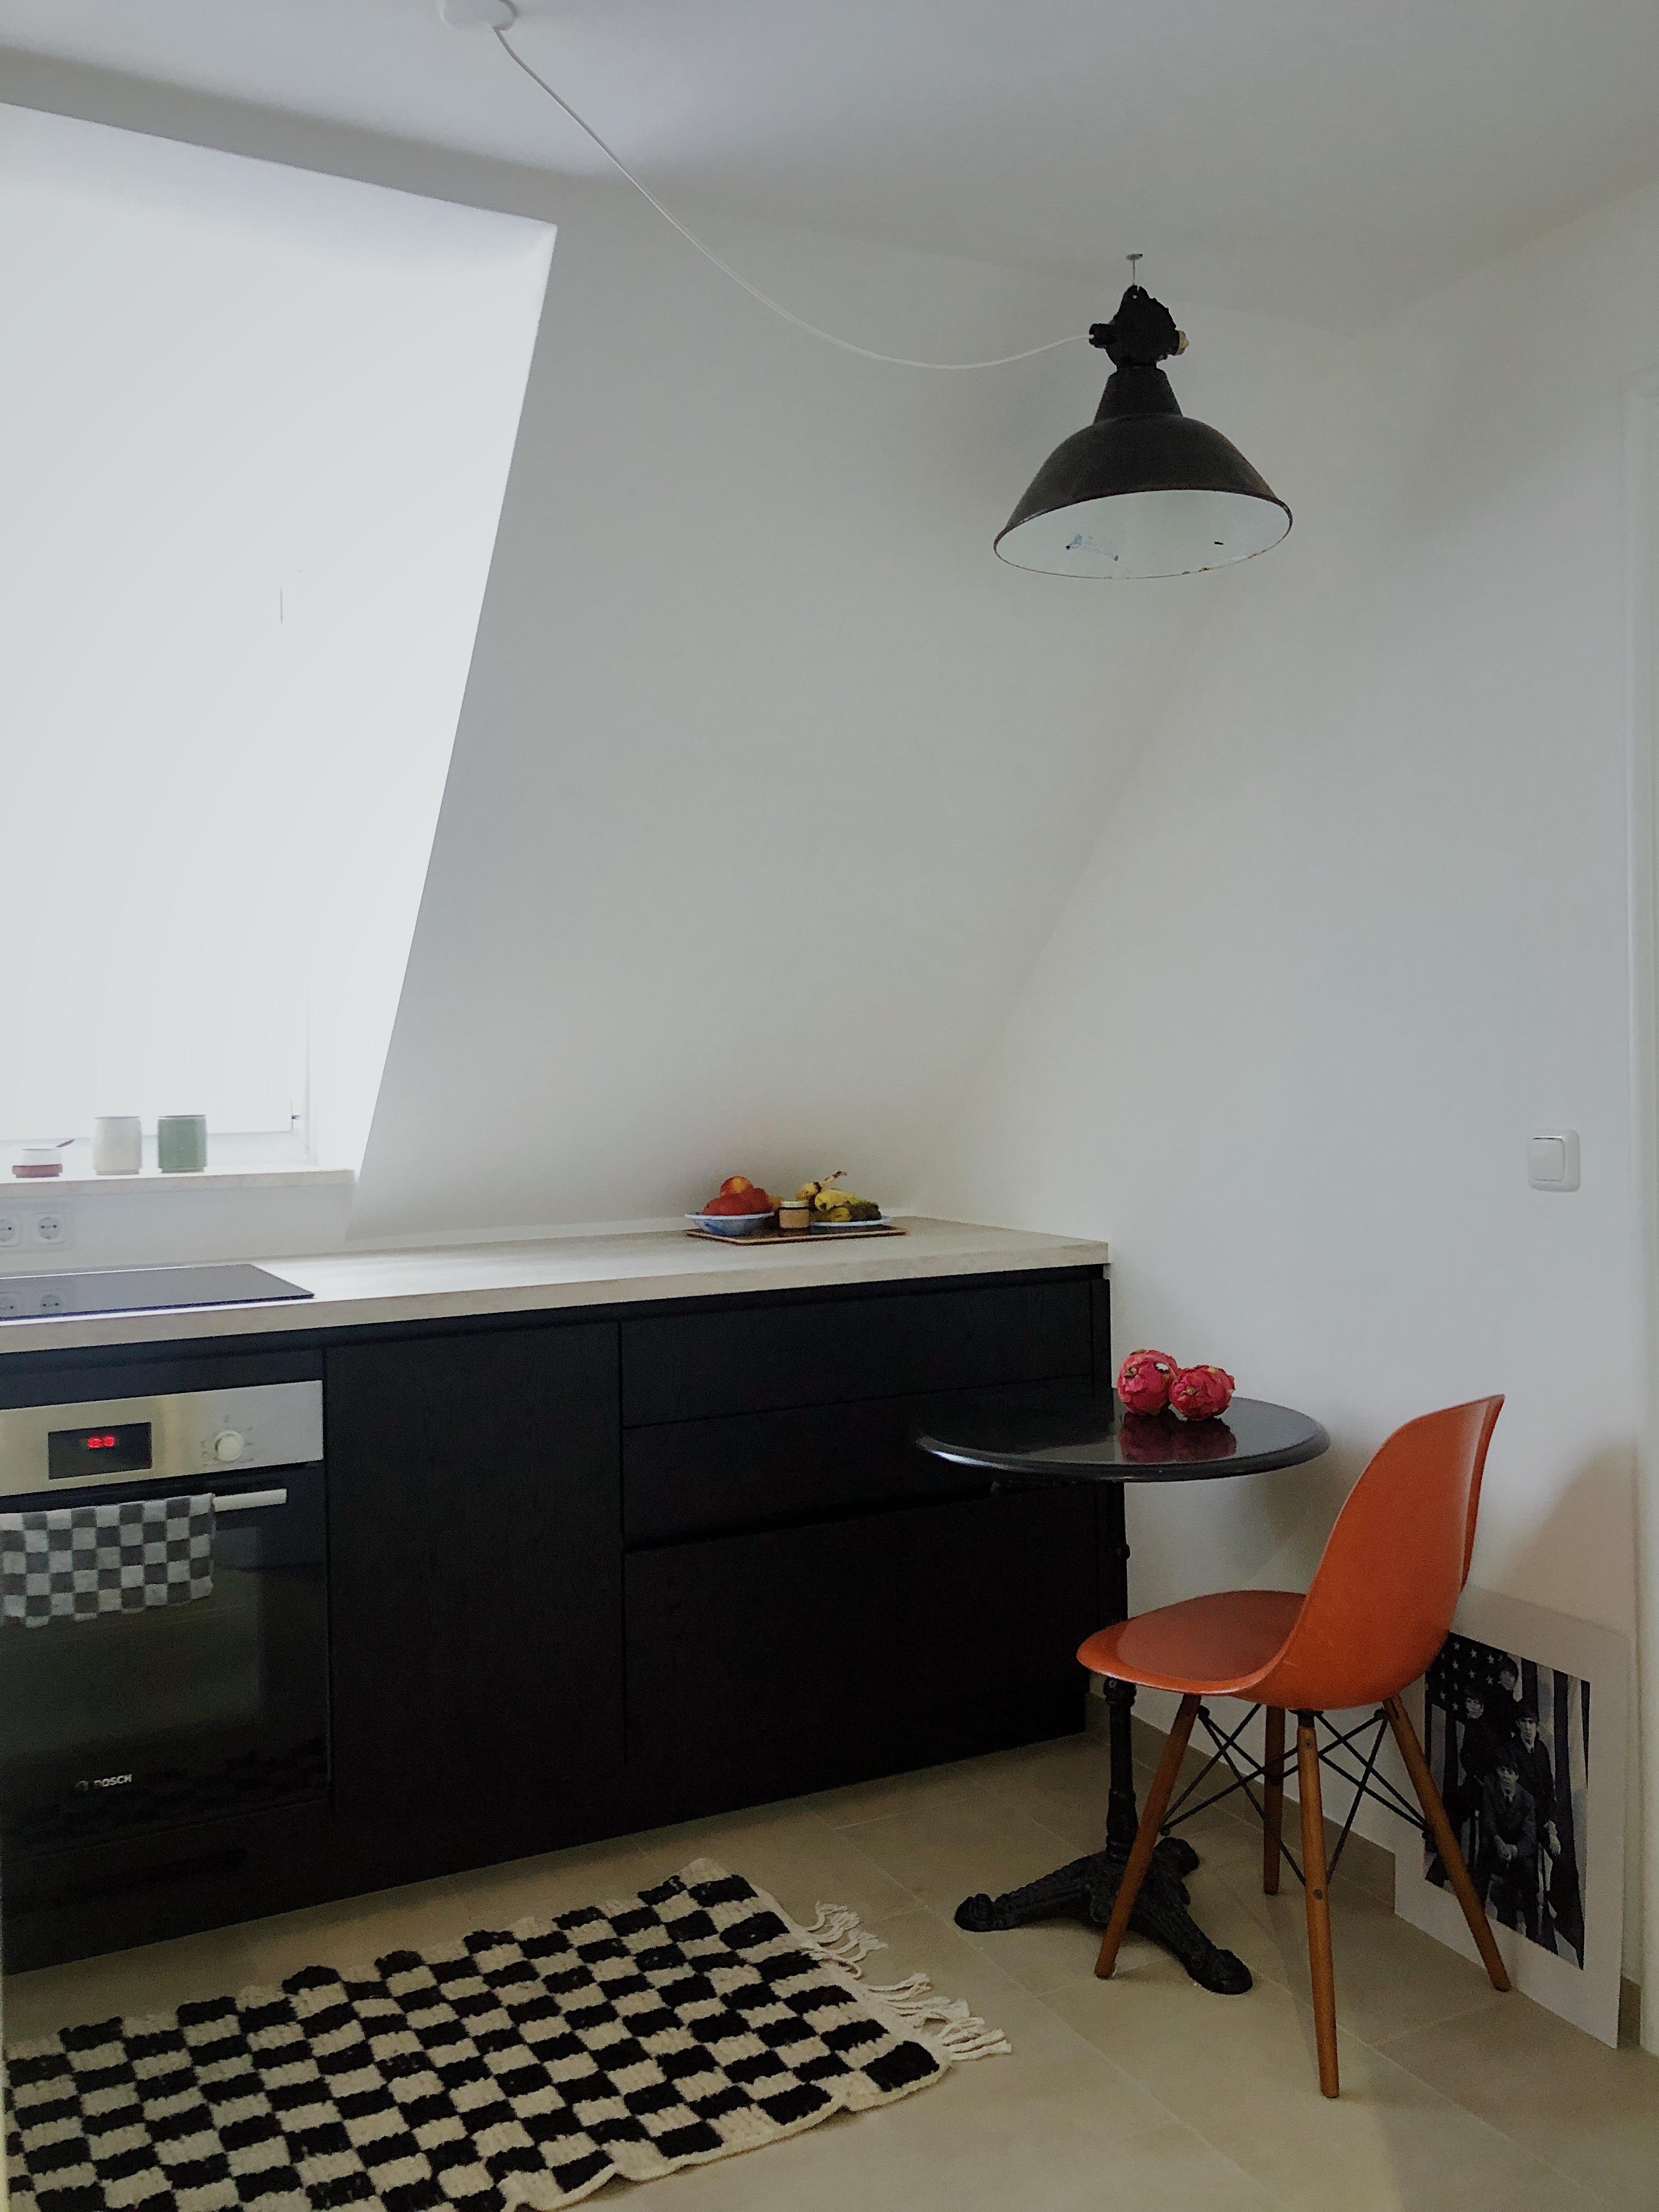 KITCHEN STORIES 🏁
#kitchen #kitchenstories #blackkitchen #interior #smallapartment #schwarzeküche #couchstyle #eames 